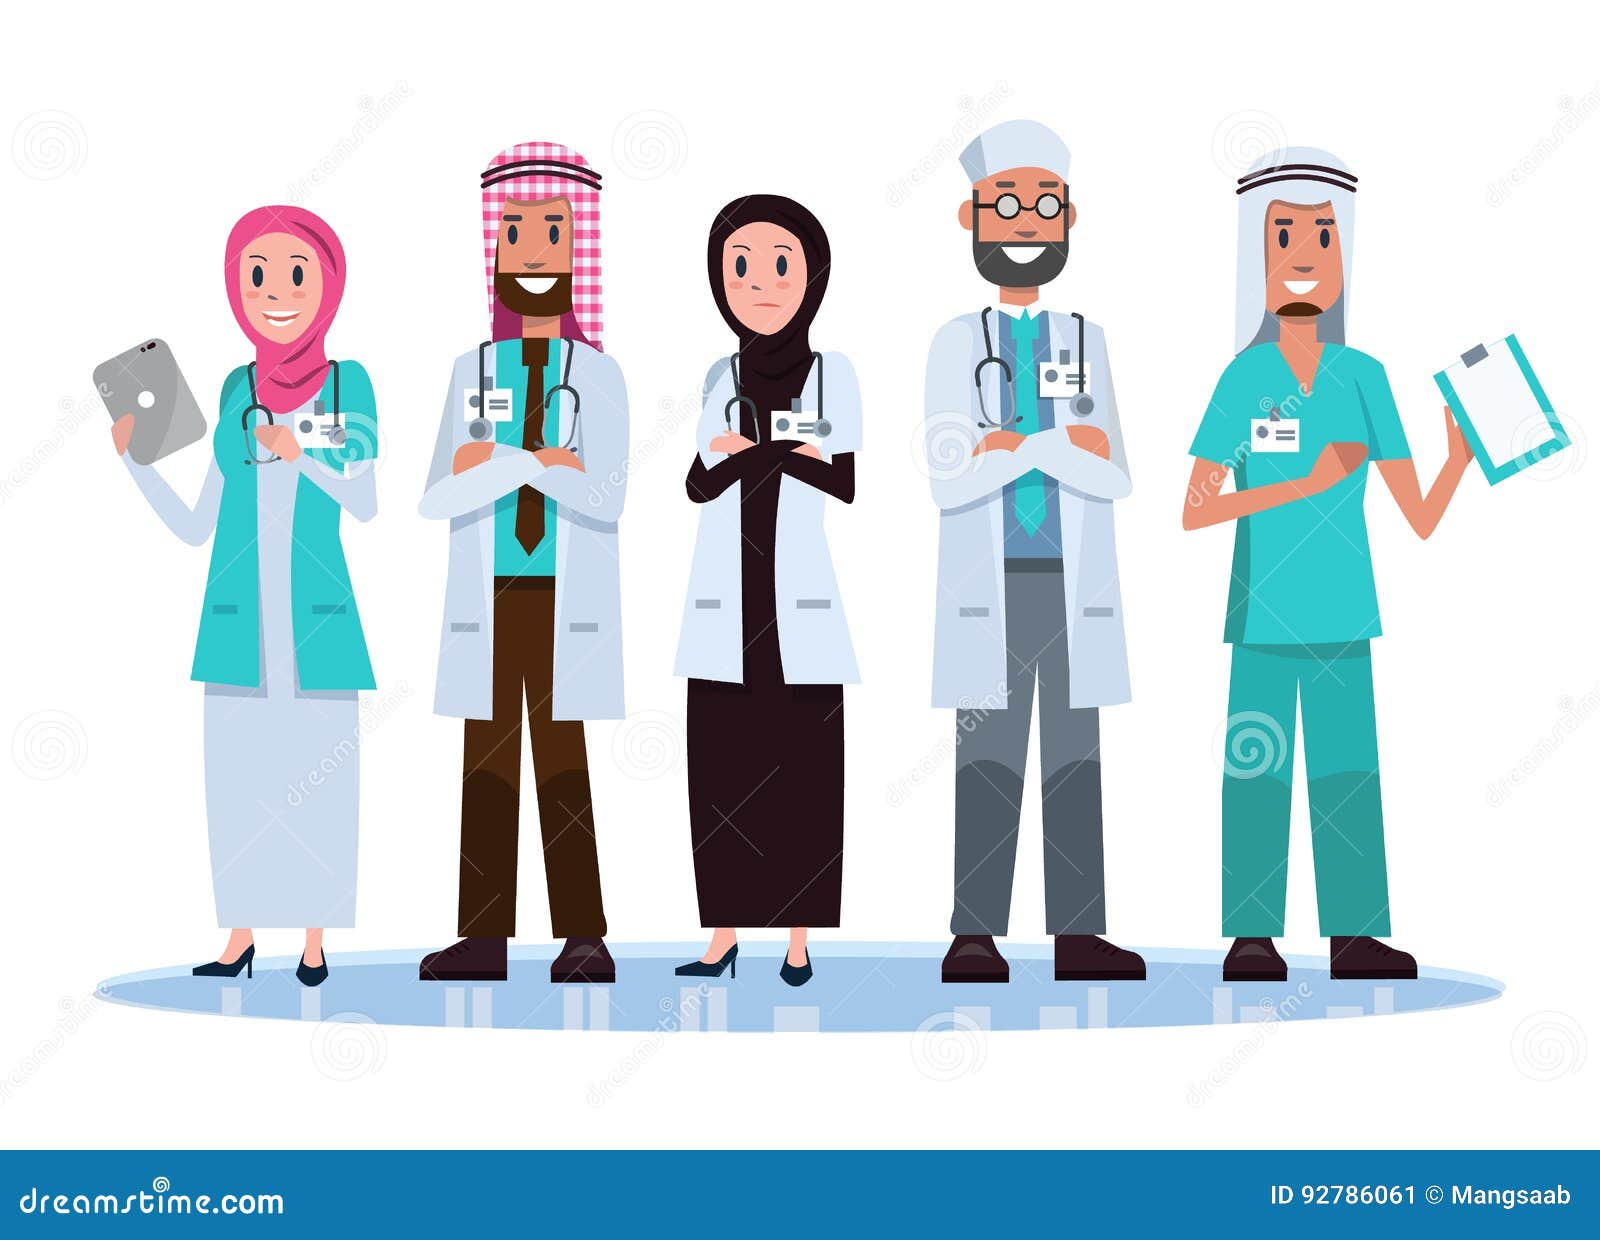 Врачи мусульмане. Медик араб. Медицина в ОАЭ. Арабский врач. Достижения арабов в медицине.